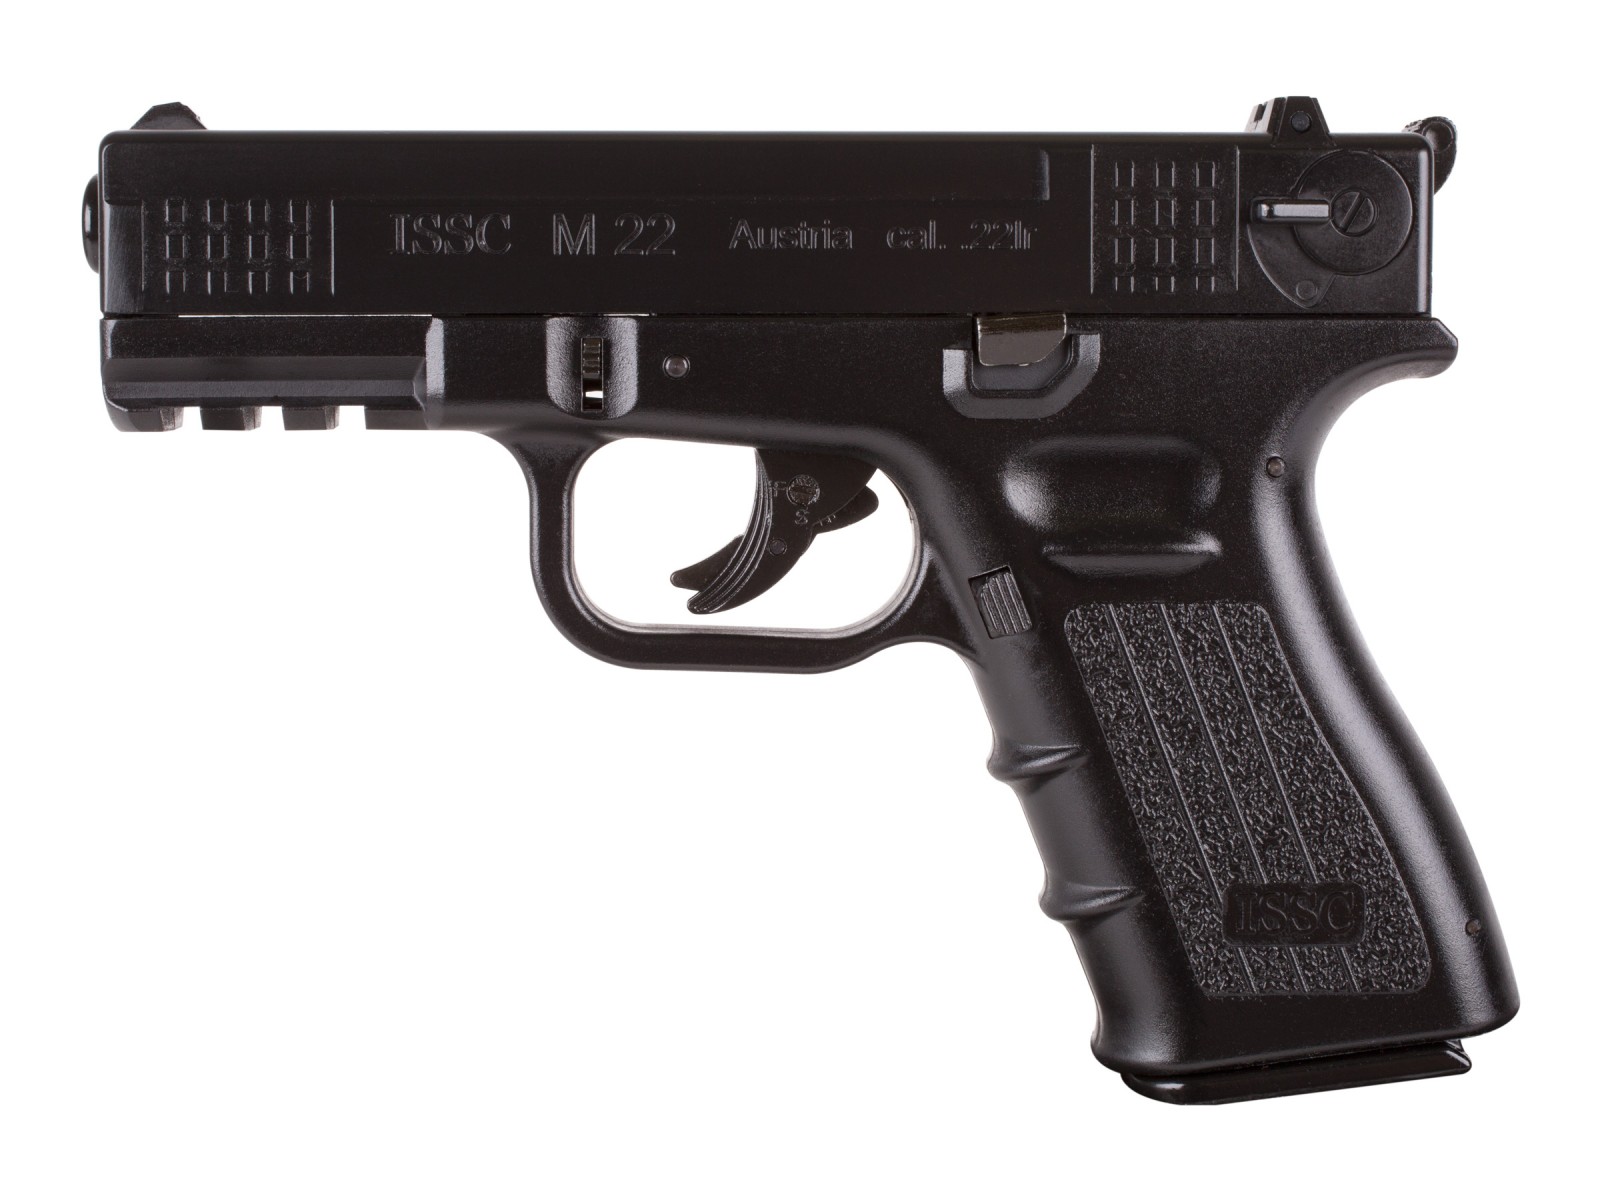 ISSC M-22 CO2 Air Pistol